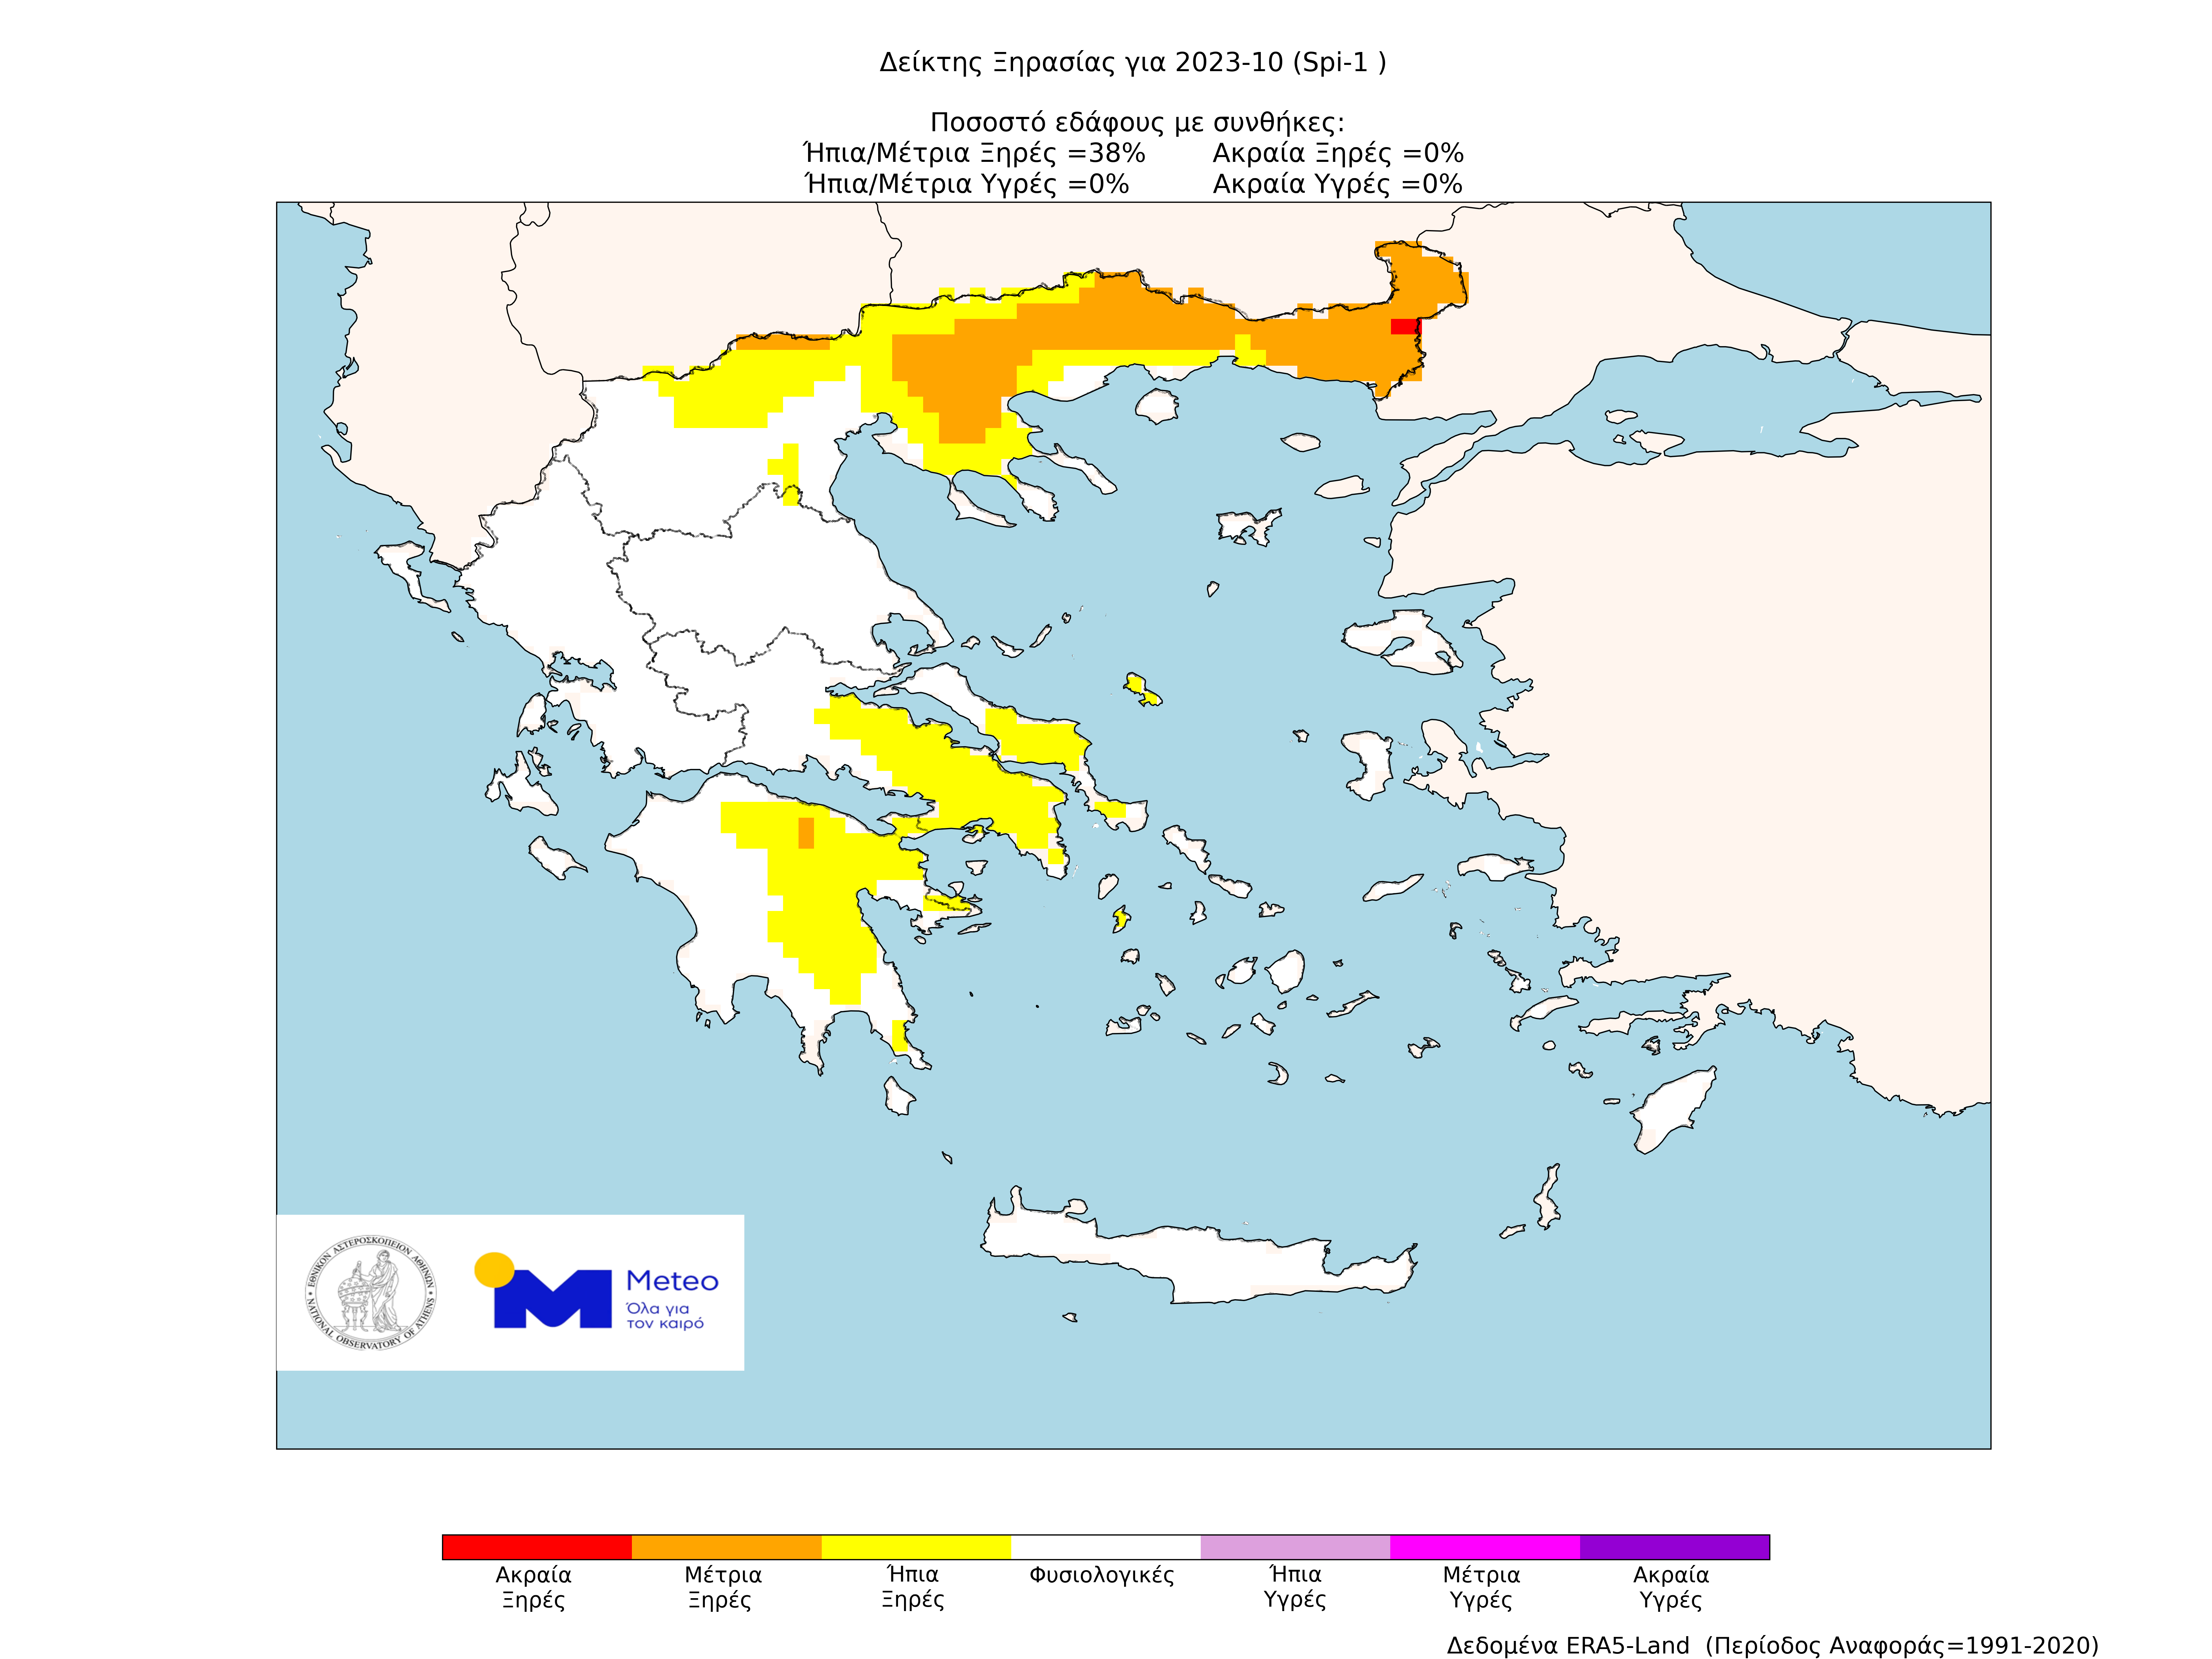 Εικόνα: Δείκτης SPI-1 για τον Οκτώβριο 2023 στην Ελλάδα (περίοδος αναφοράς 1991-2020)